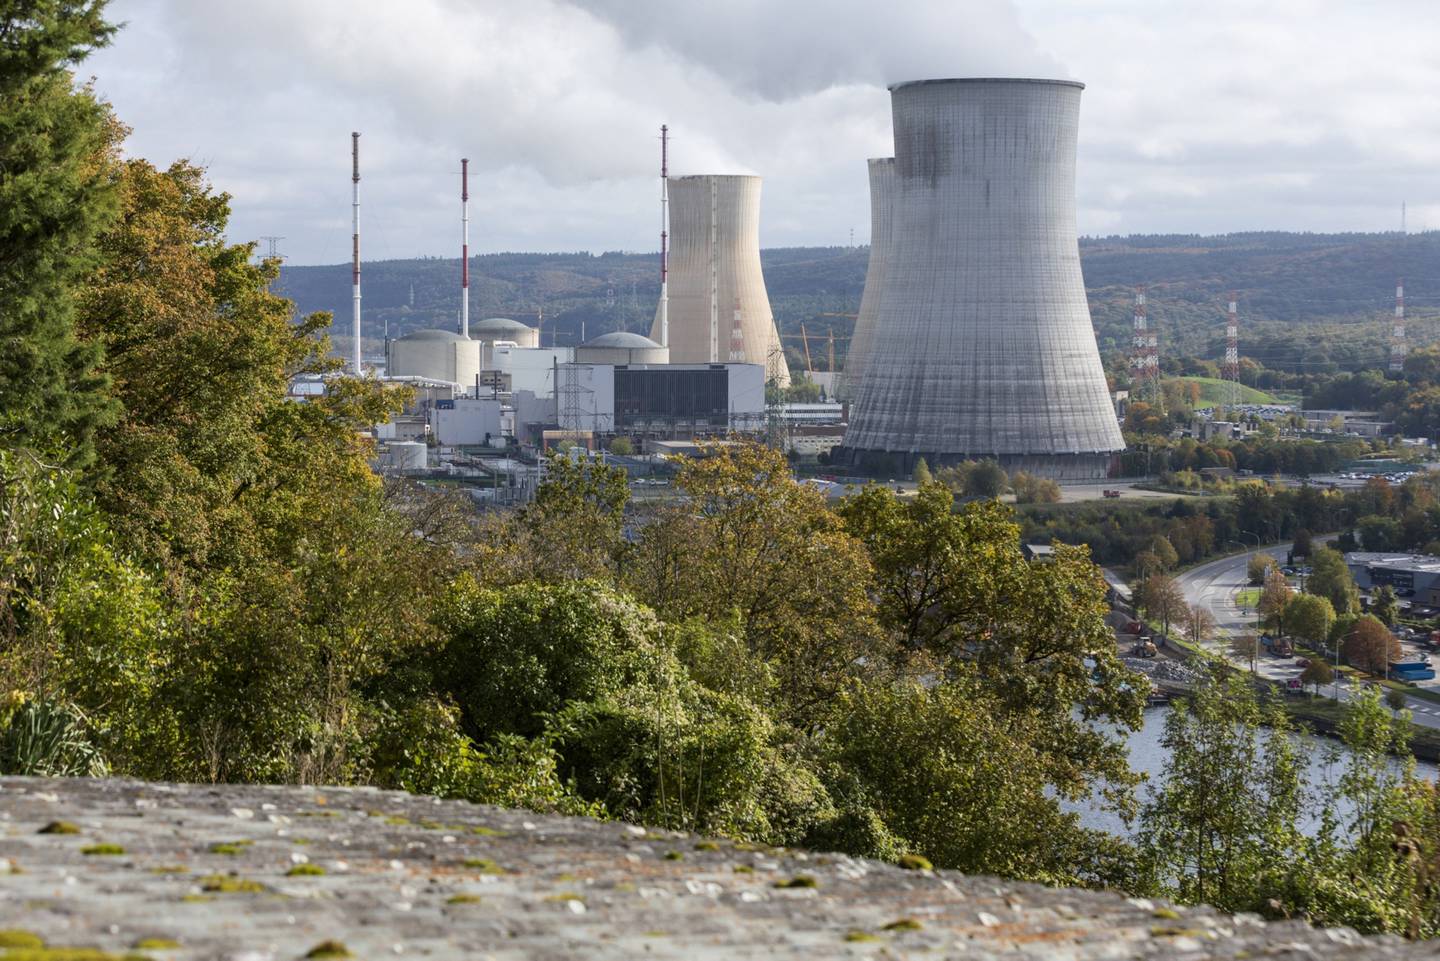 Torres de refrigeración en la central nuclear de Tihange, operada por Engie SA, en Huy, Bélgica, el martes 26 de octubre de 2021. Hasta el año 2000, Europa generaba casi un tercio de su electricidad a partir de la fisión nuclear, la mayor proporción de cualquier región.